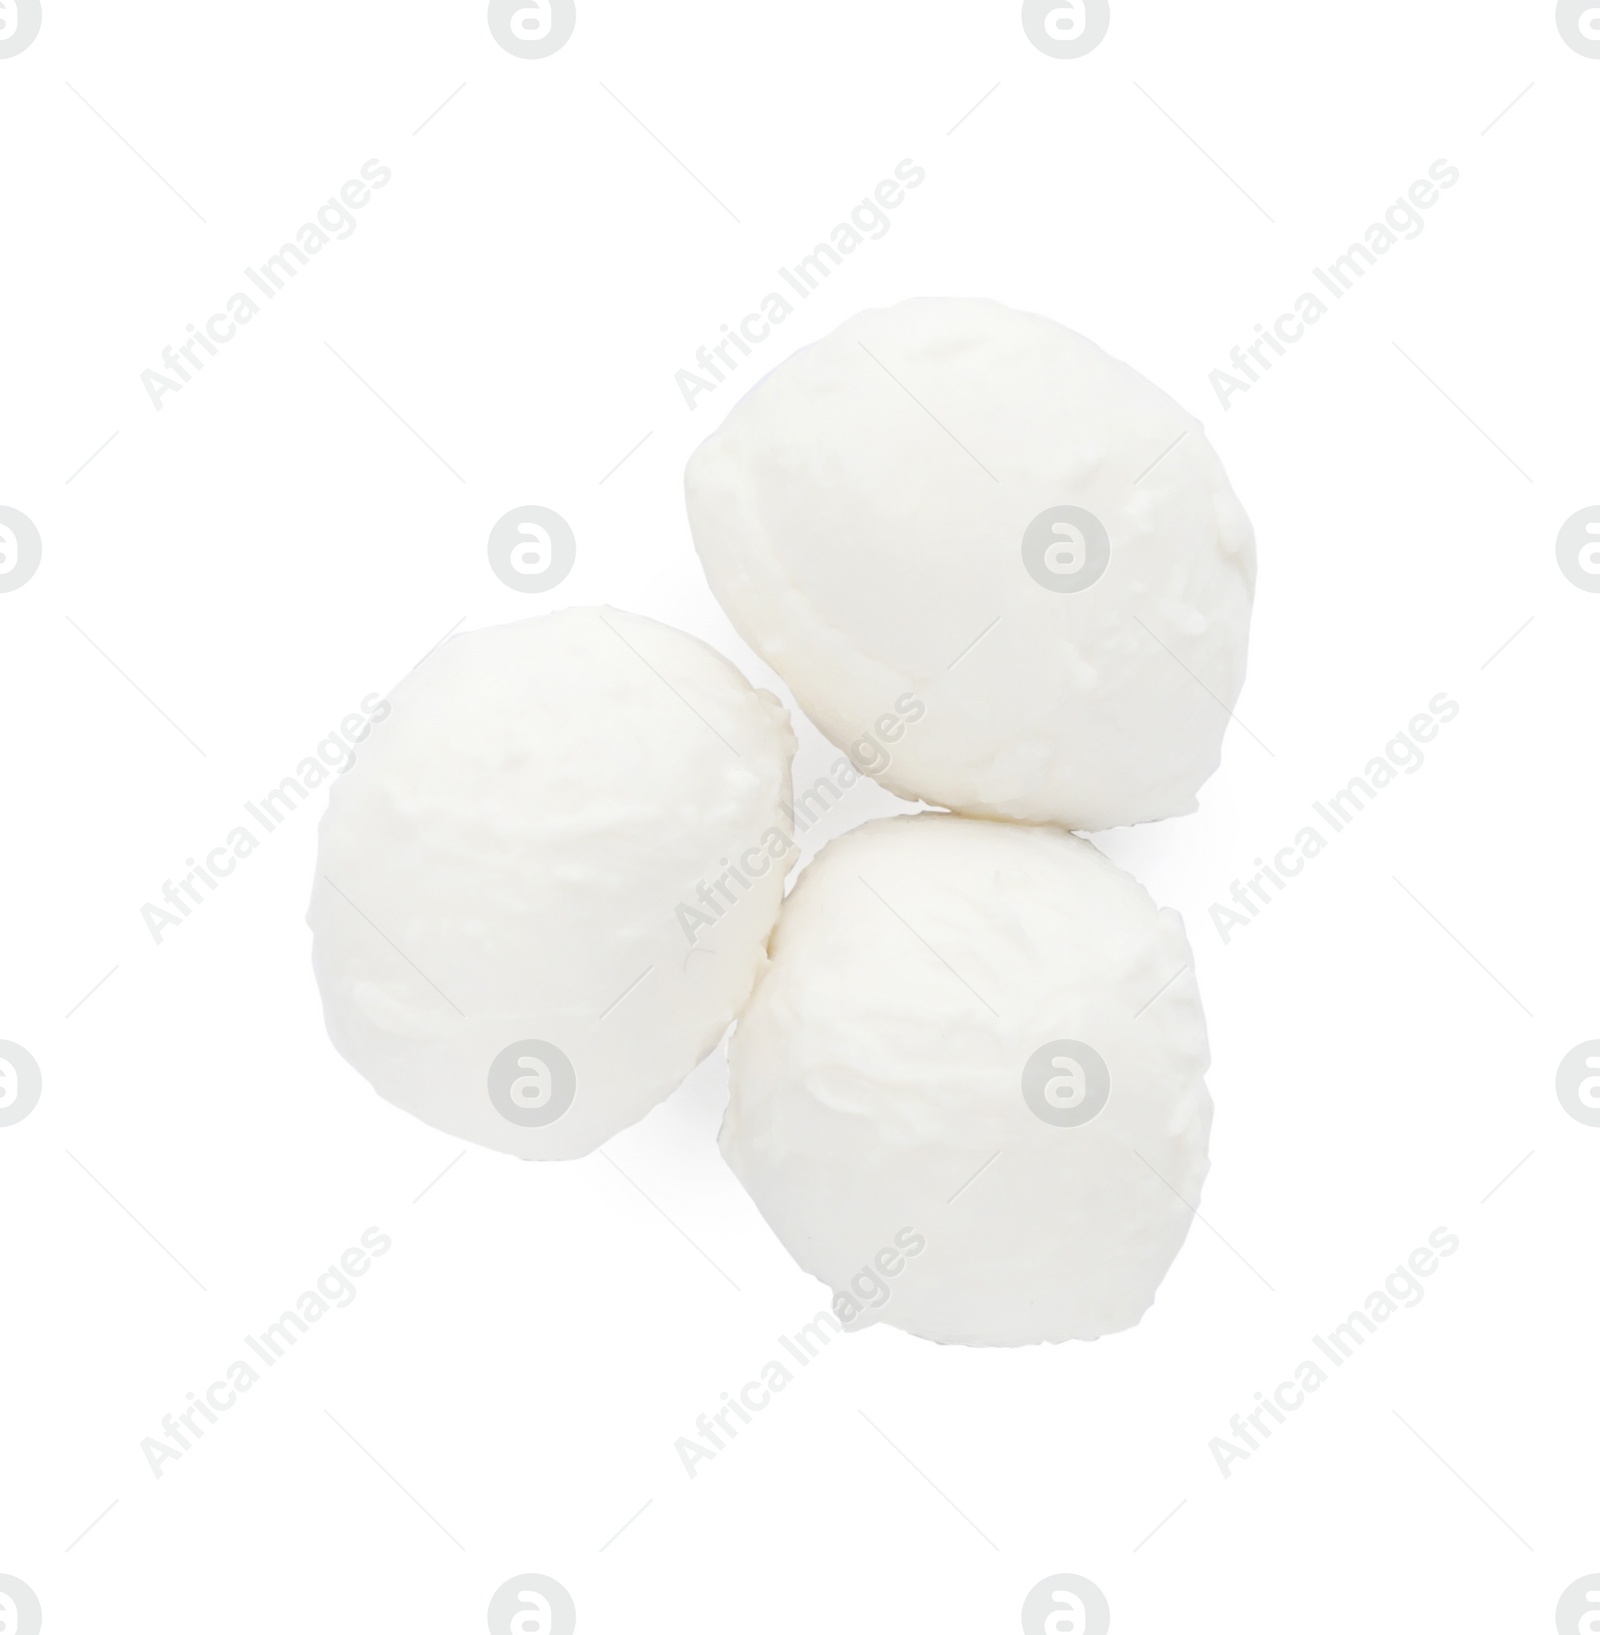 Photo of Delicious mozzarella cheese balls on white background, top view